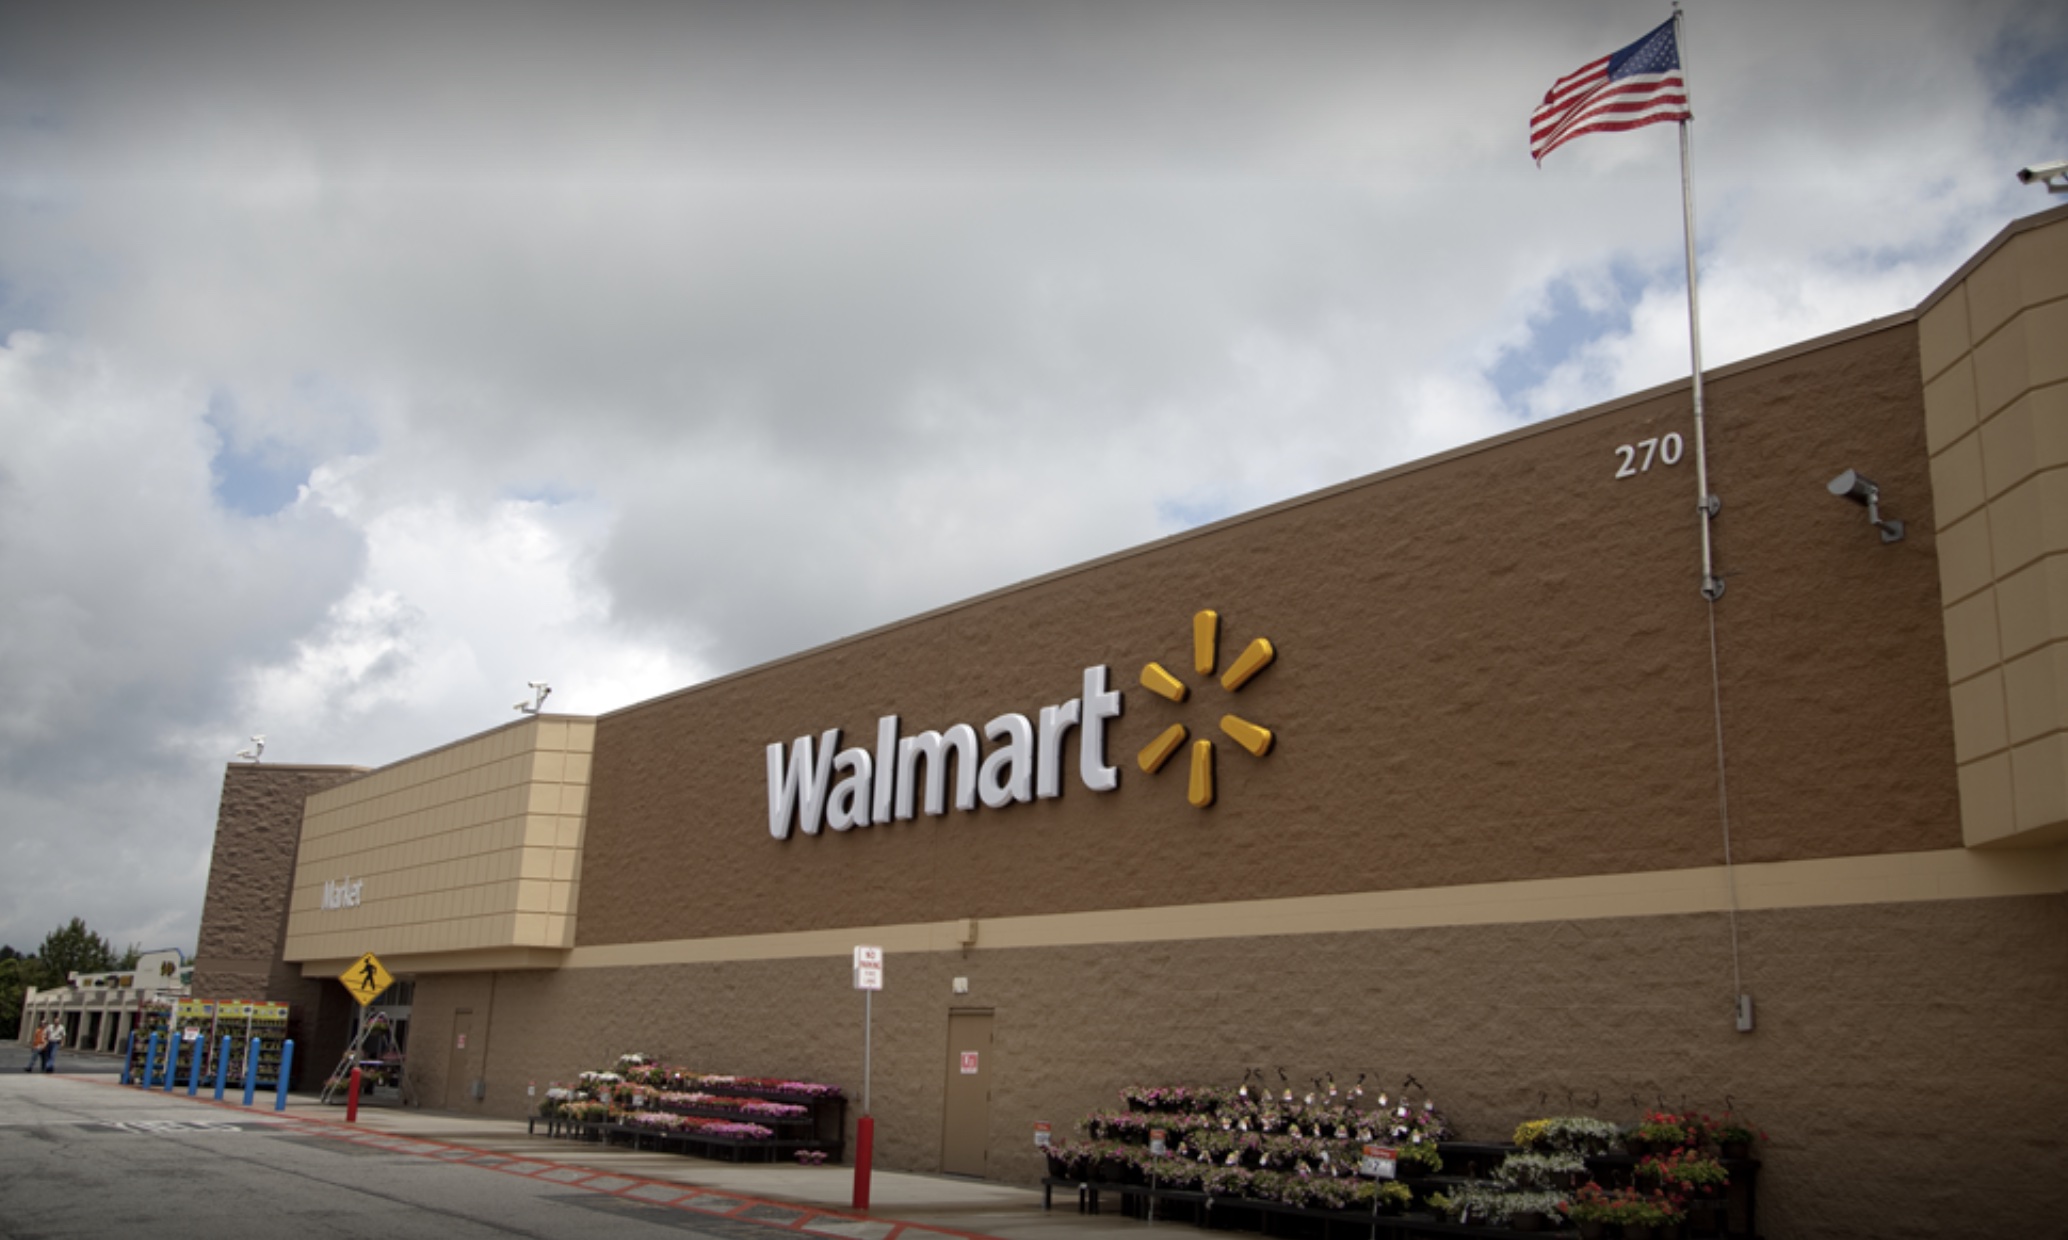 Walmart to close for COVID-19 precautions